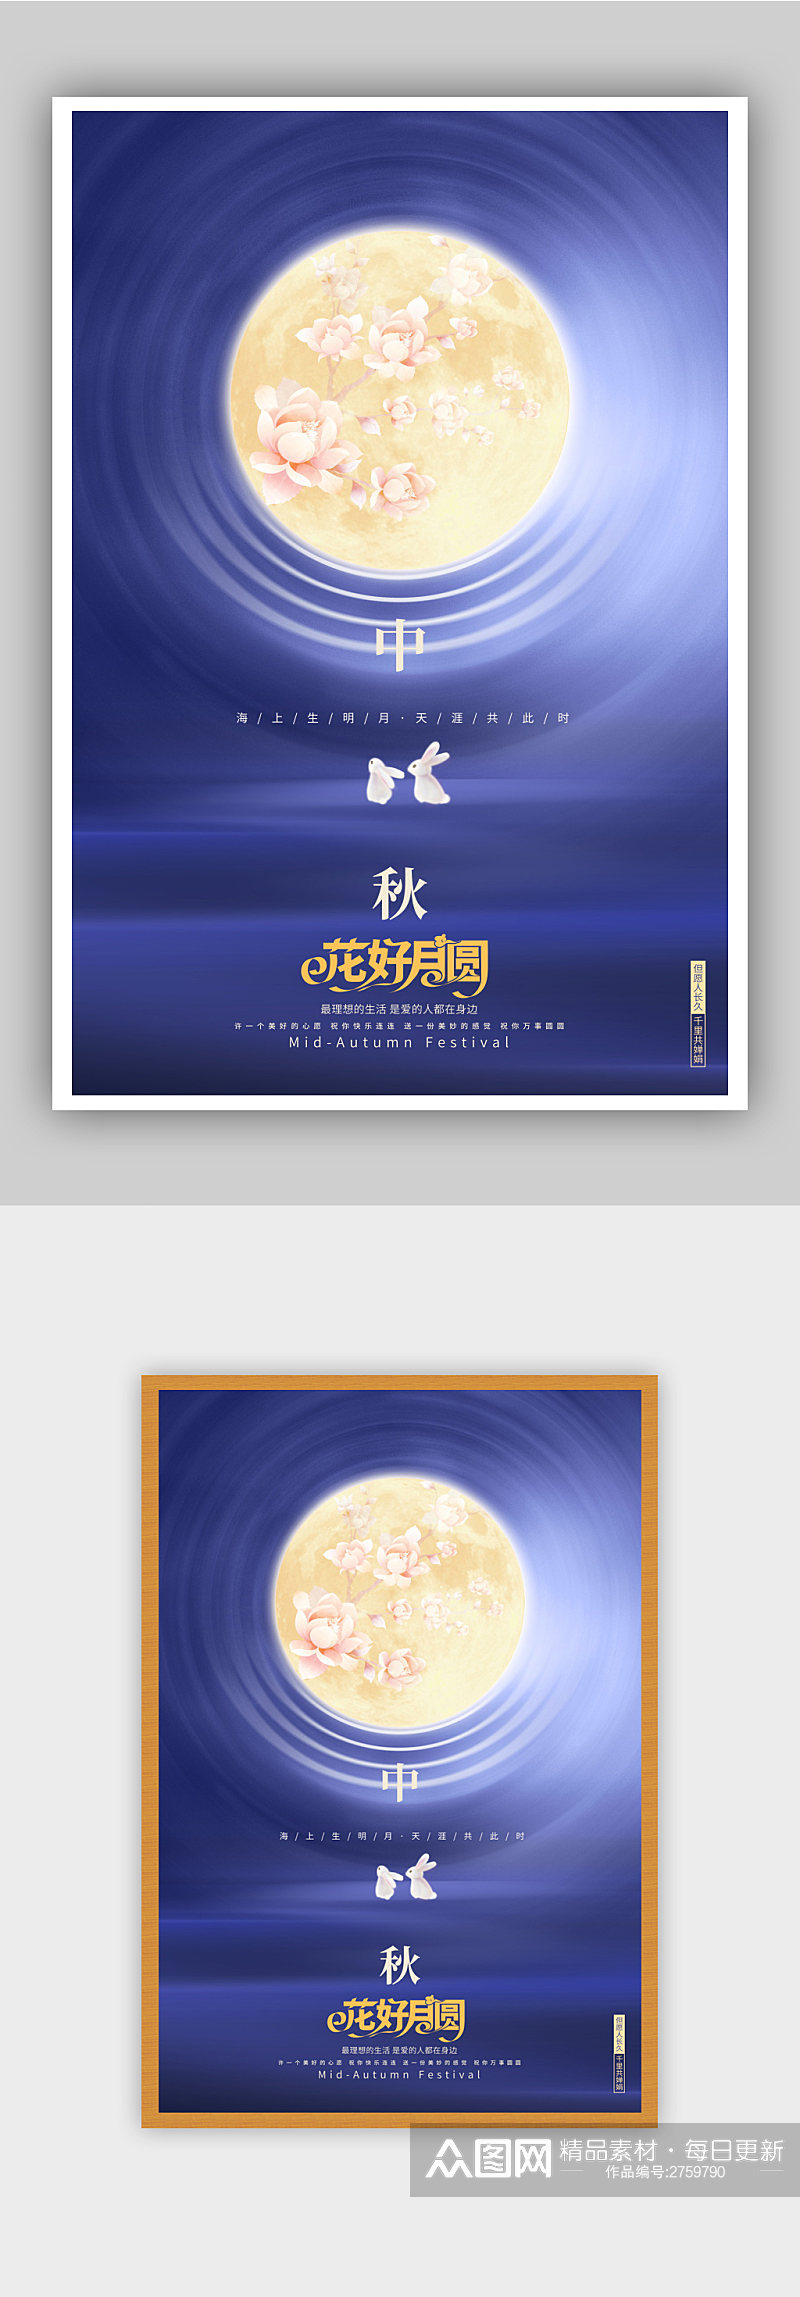 蓝色创意花好月圆中秋节宣传海报素材